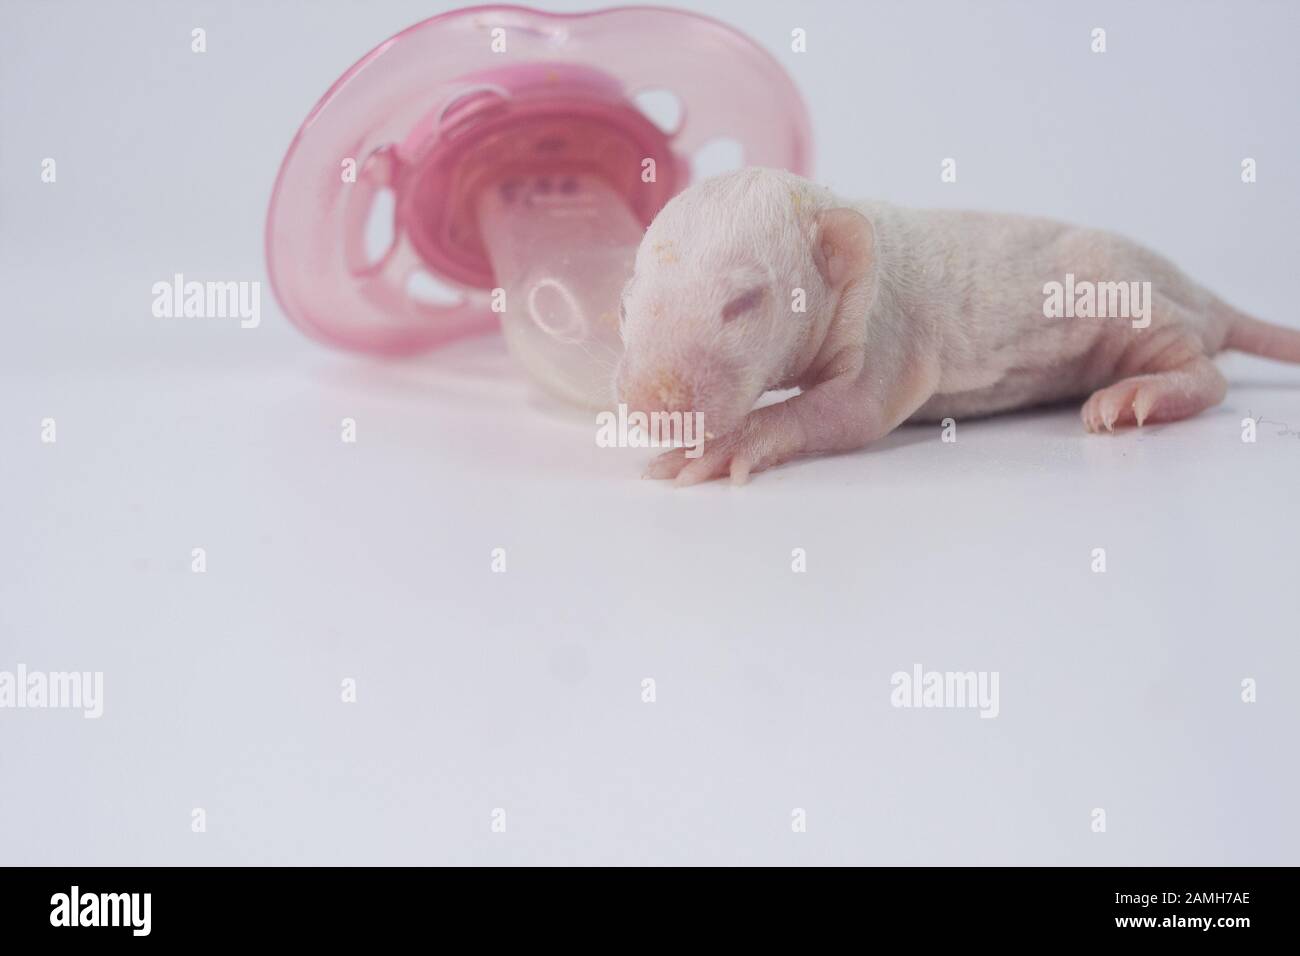 Keim Rat Baby Ohne Haare Neugeborene Maus Mit Pinkfarbenem Dummy Latex Schnuller Chinesischer Kalender Asiatisches Neujahr Stockfotografie Alamy